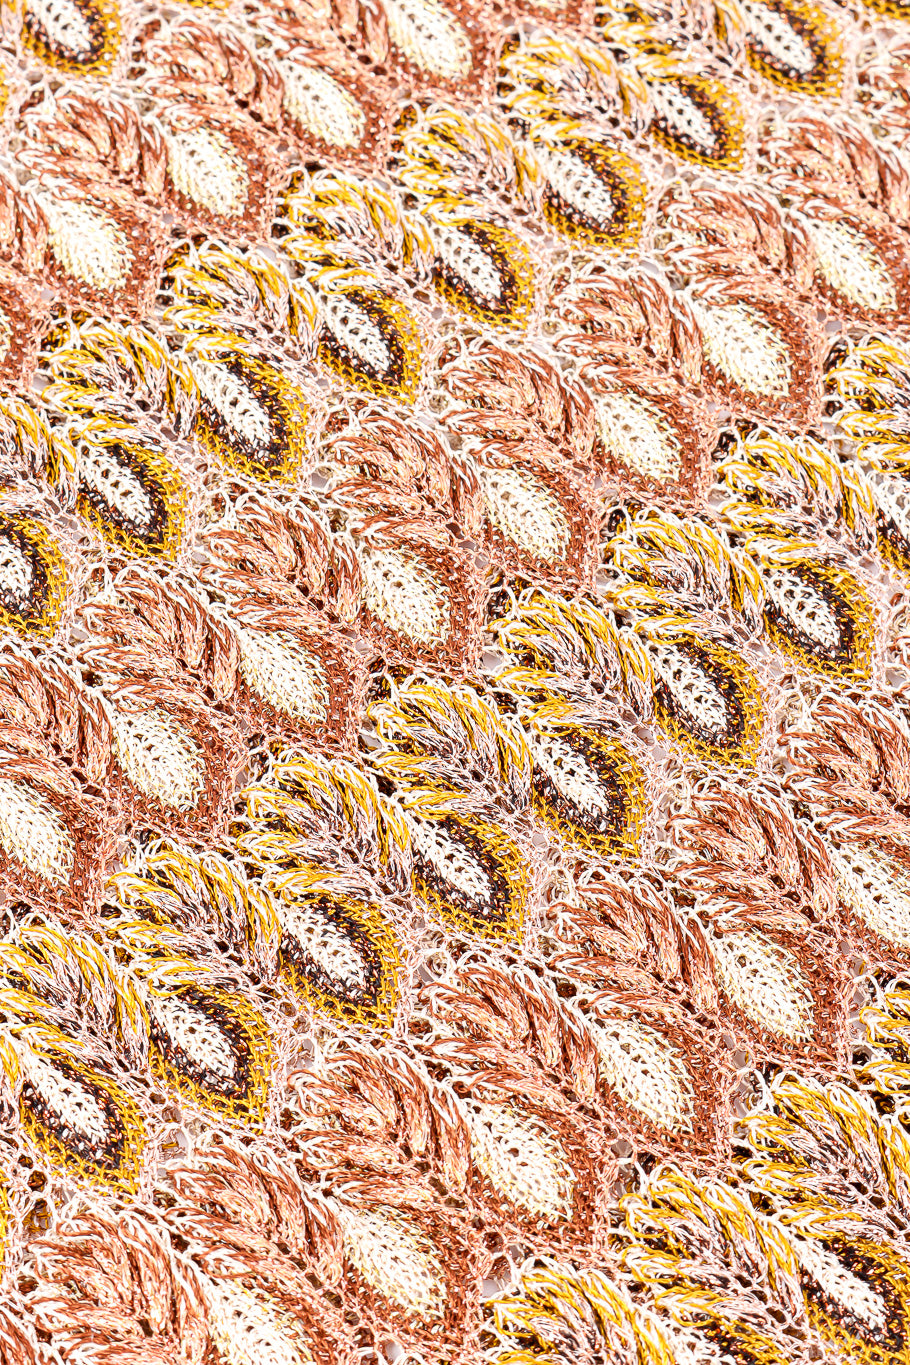 Missoni metallic knit dress fabric detail @recessla